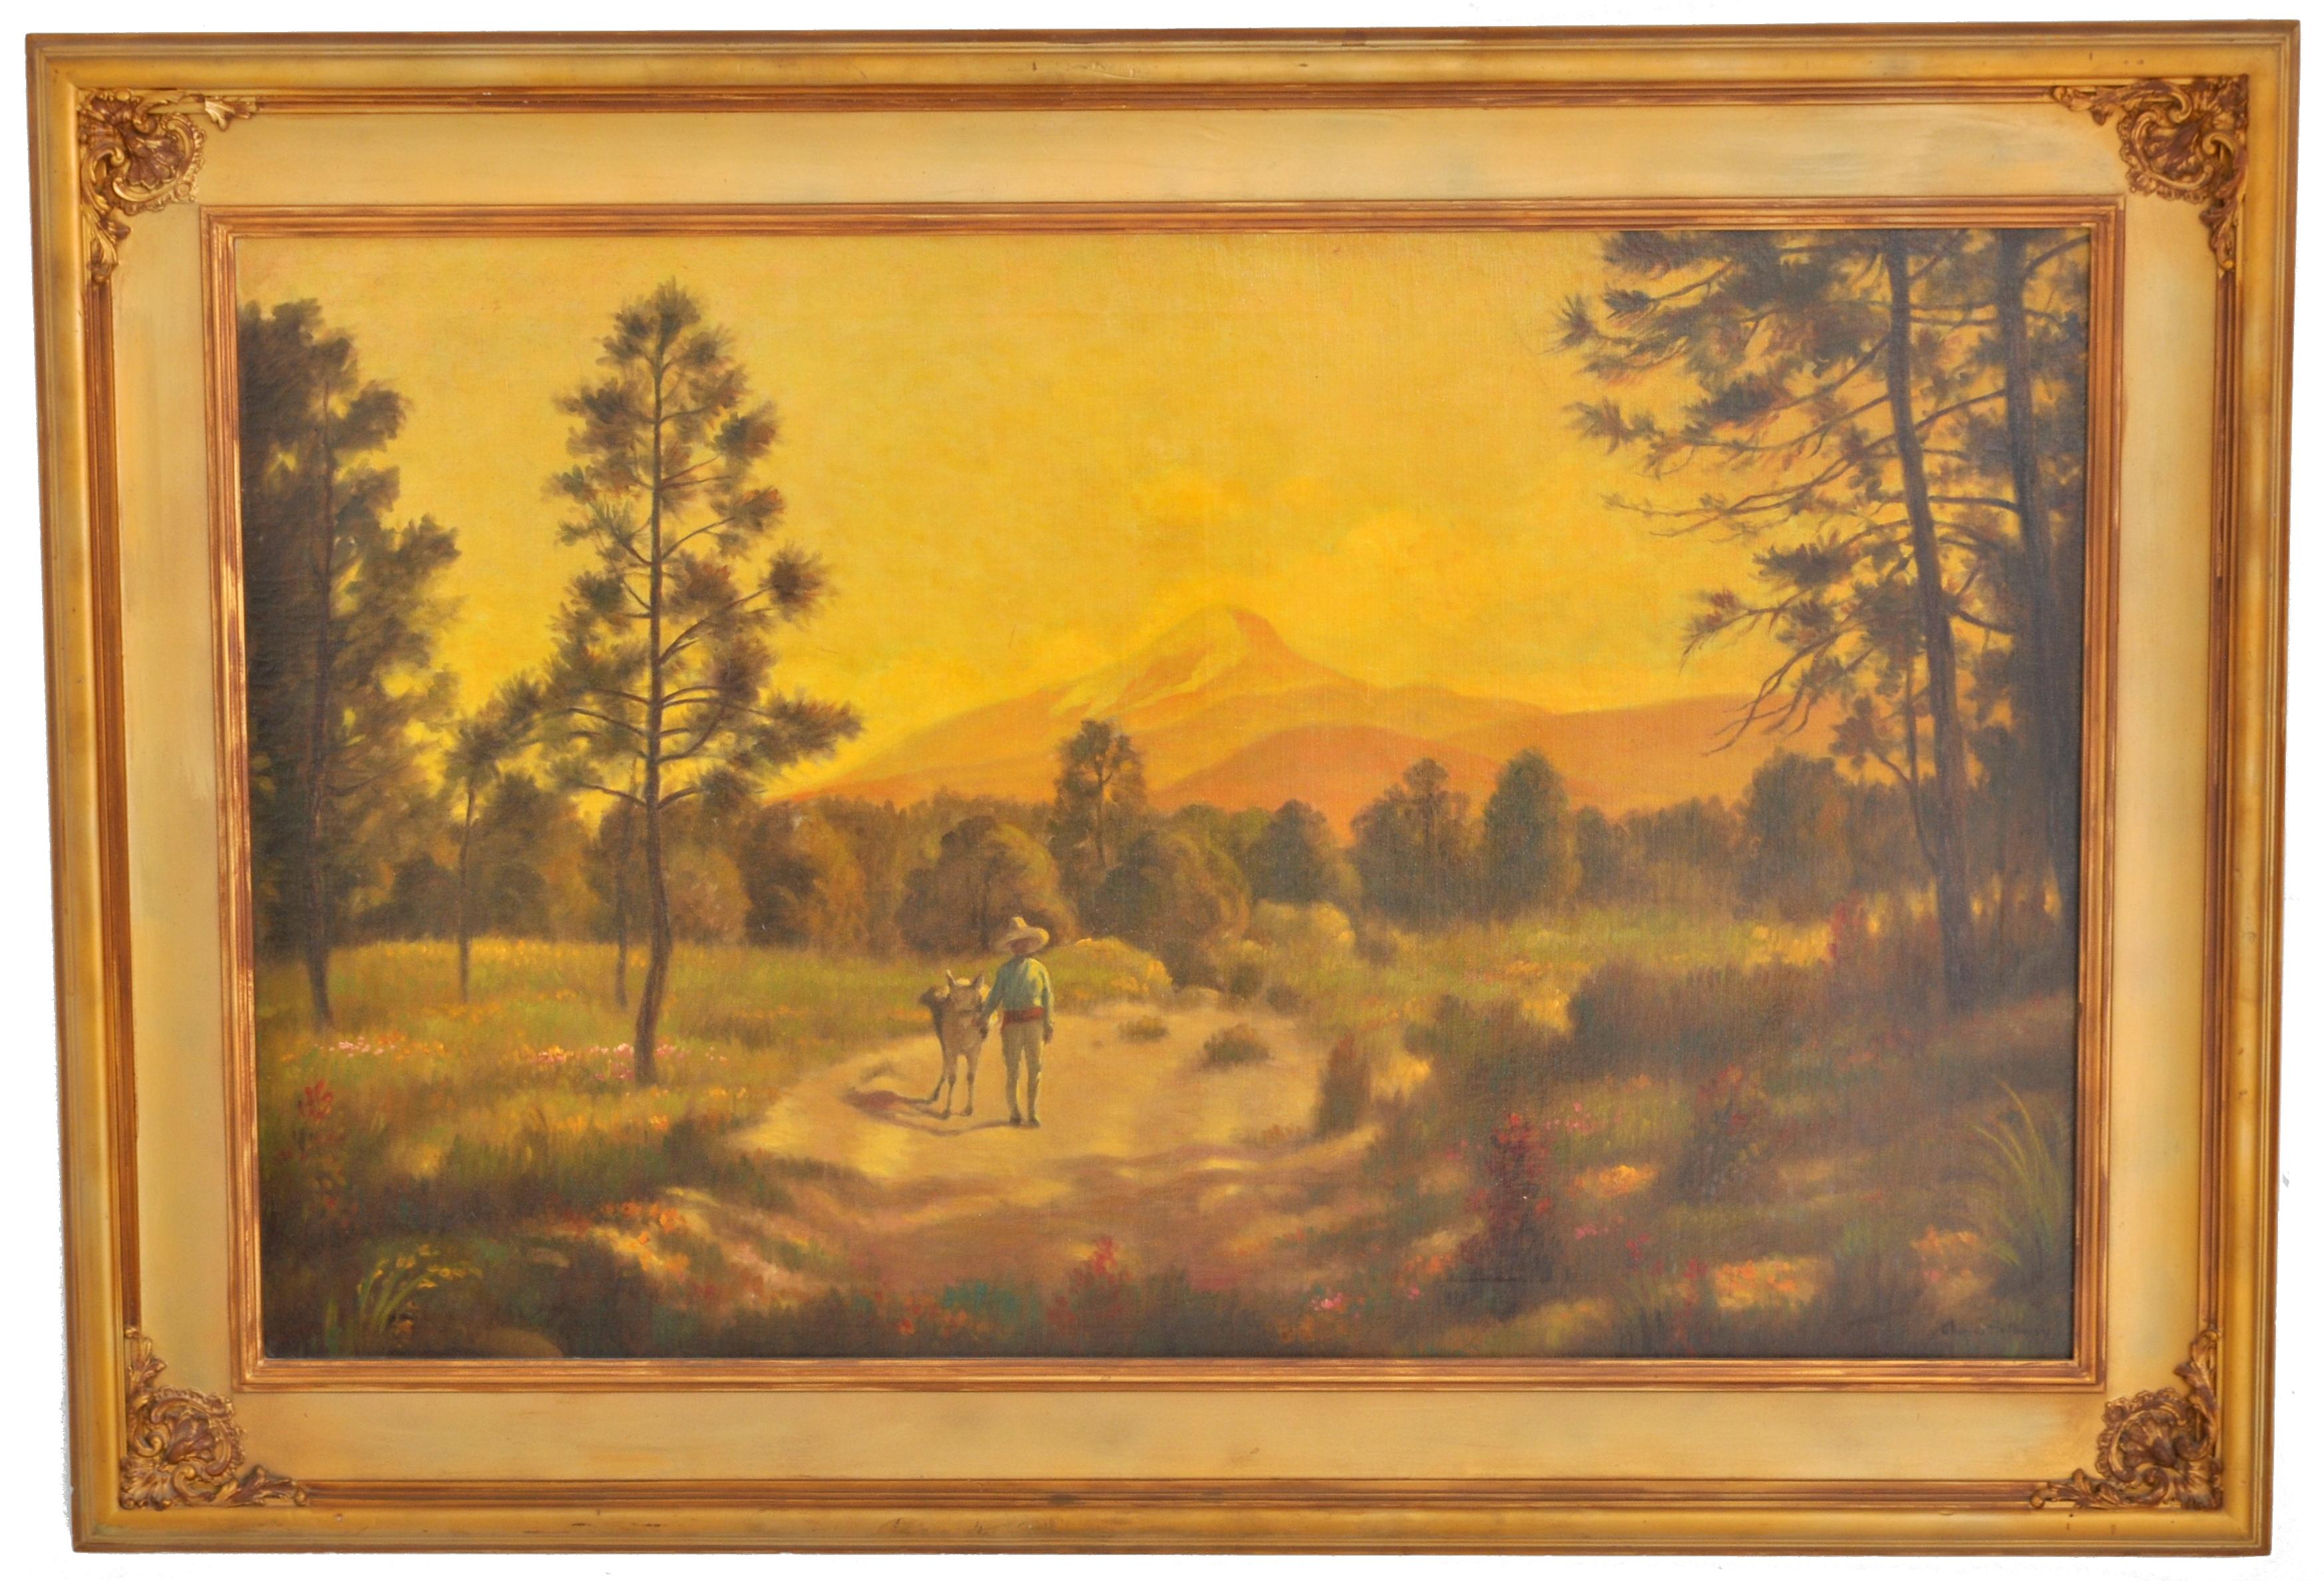 Huile américaine ancienne sur toile par Charles Holloway (américain, 1859-1941), vers 1915. La peinture représente une scène de paysage sud-américain, au premier plan un personnage masculin marchant sur un burro au coucher du soleil, la peinture de